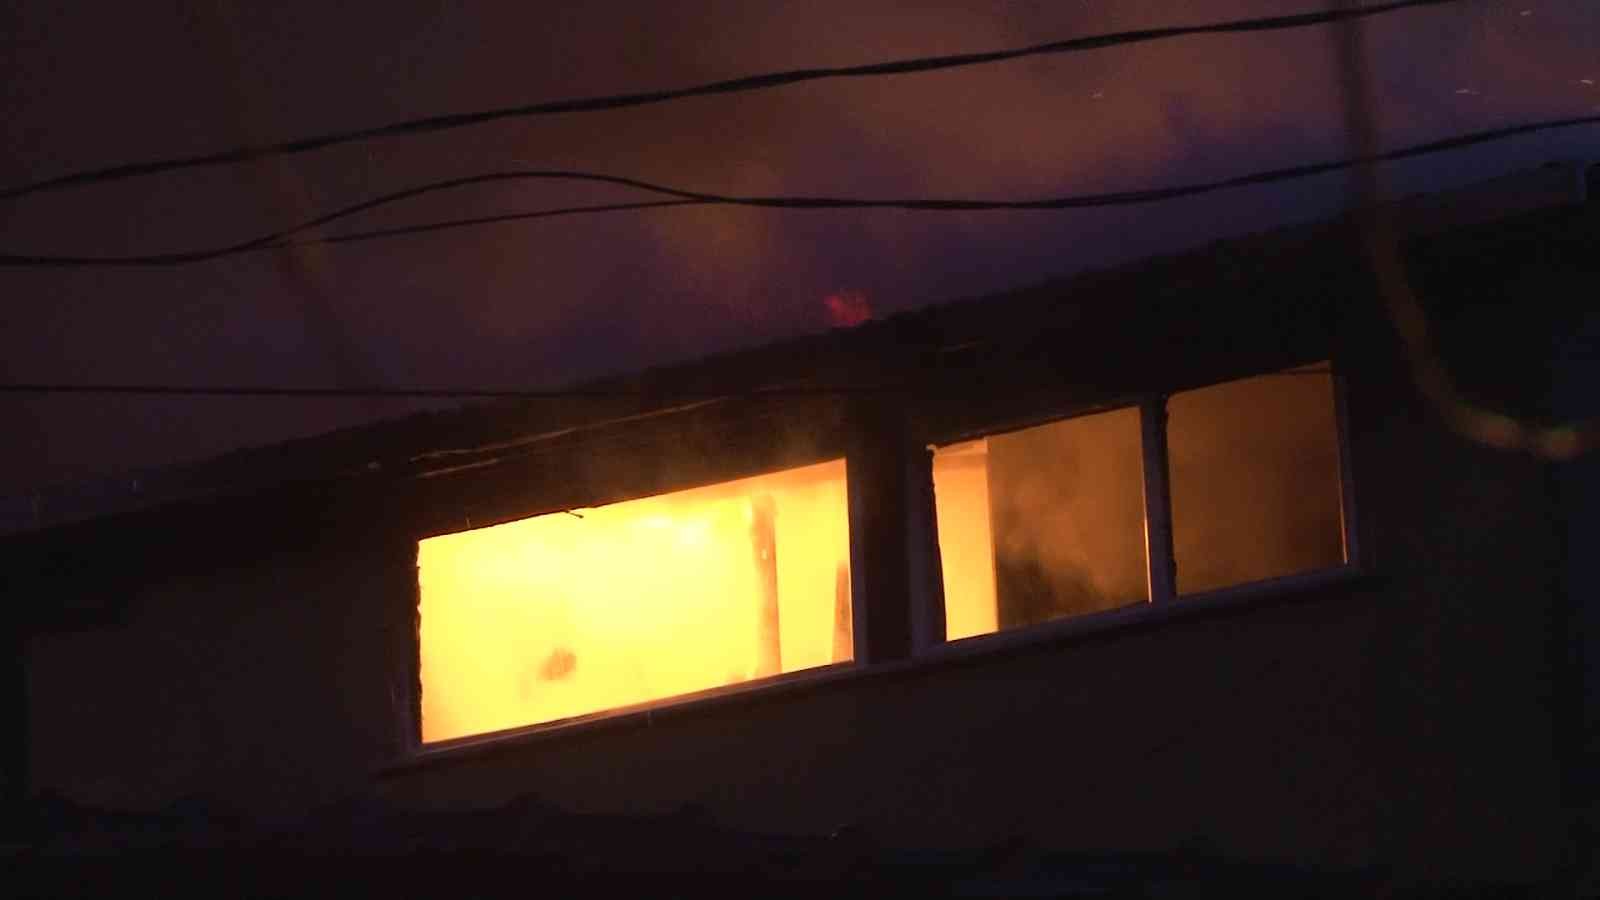 Beykoz Yeni Mahalle Küçüksu Caddesi’nde sabah saatlerinde müstakil bir evde yangın çıktı. Yangın diğer binalara da sirayet etti. Beykoz Yeni ...